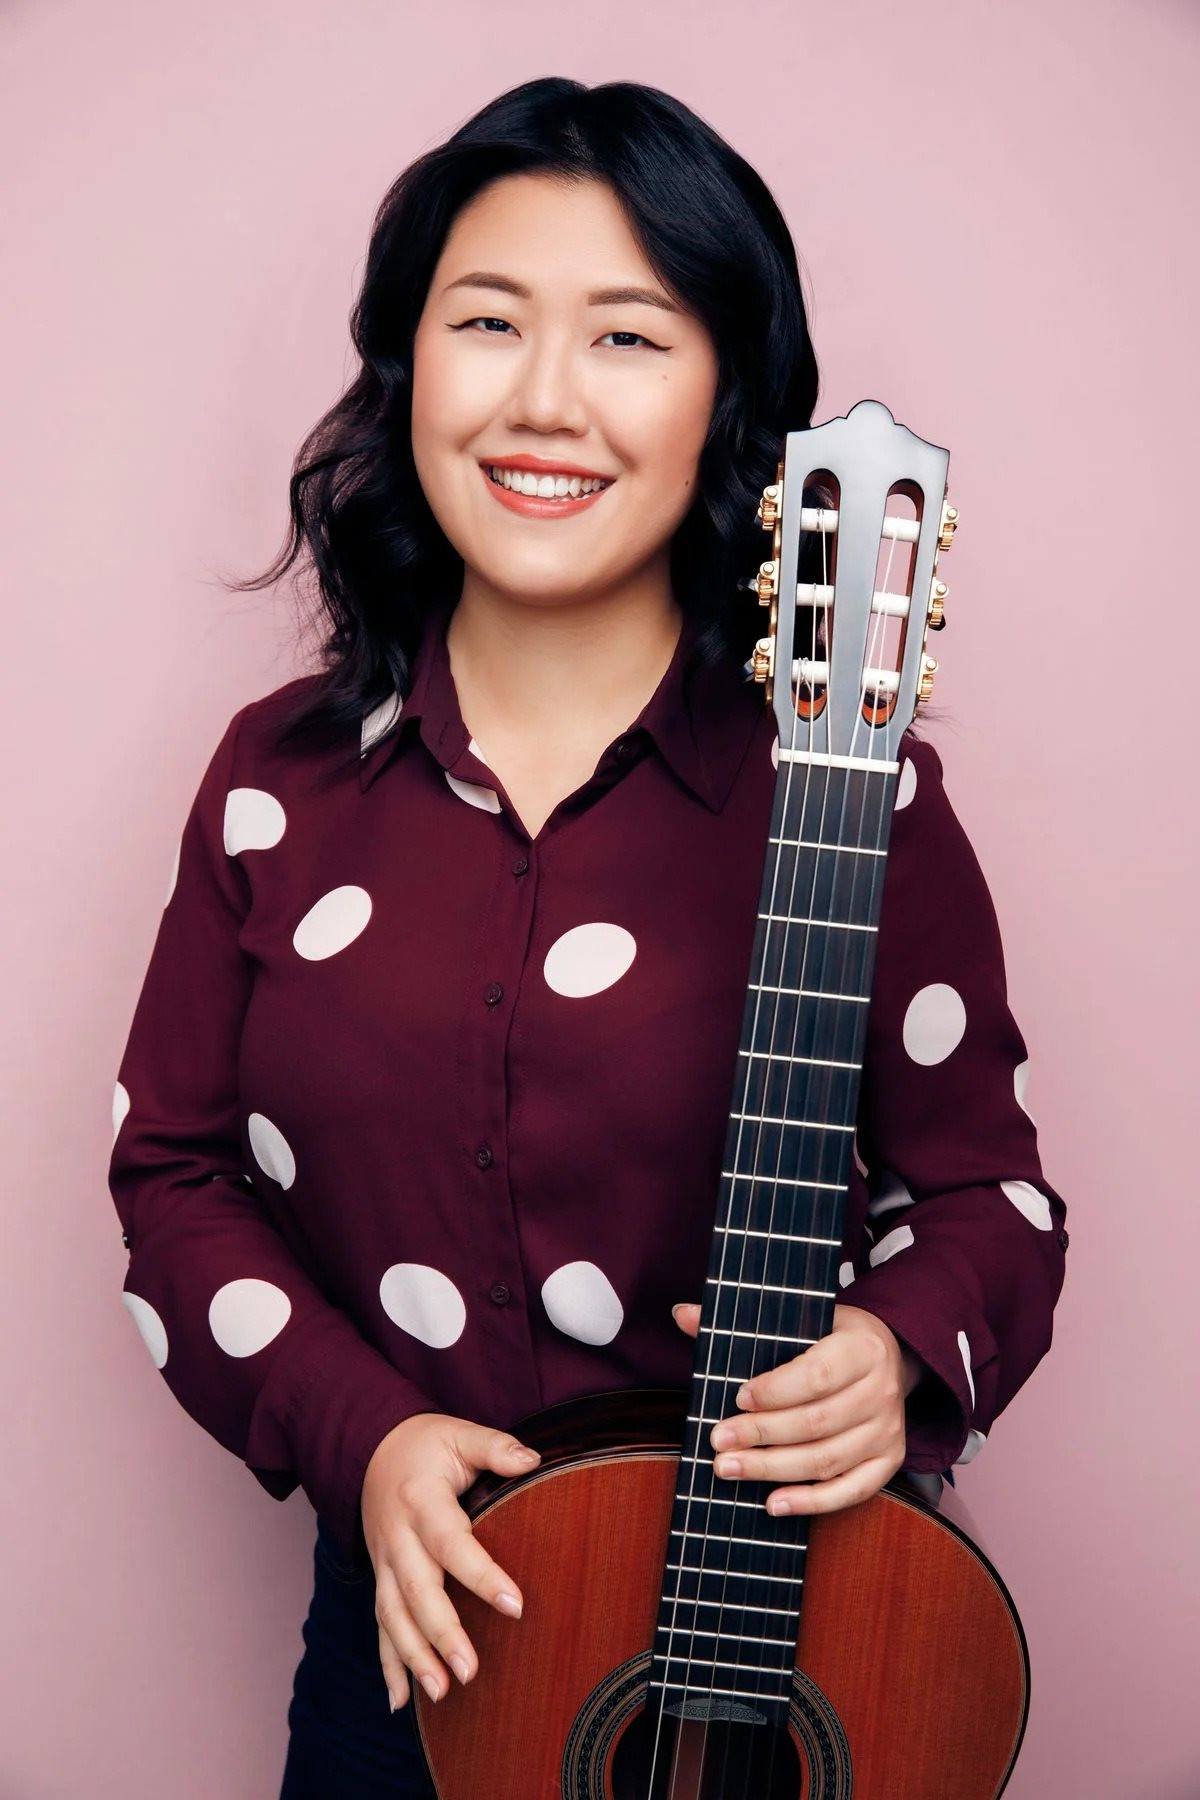 Nữ nghệ sỹ guitar nổi tiếng thế giới Bokyung Byun góp mặt trong đêm diễn của dàn nhạc SSO tối 11/12